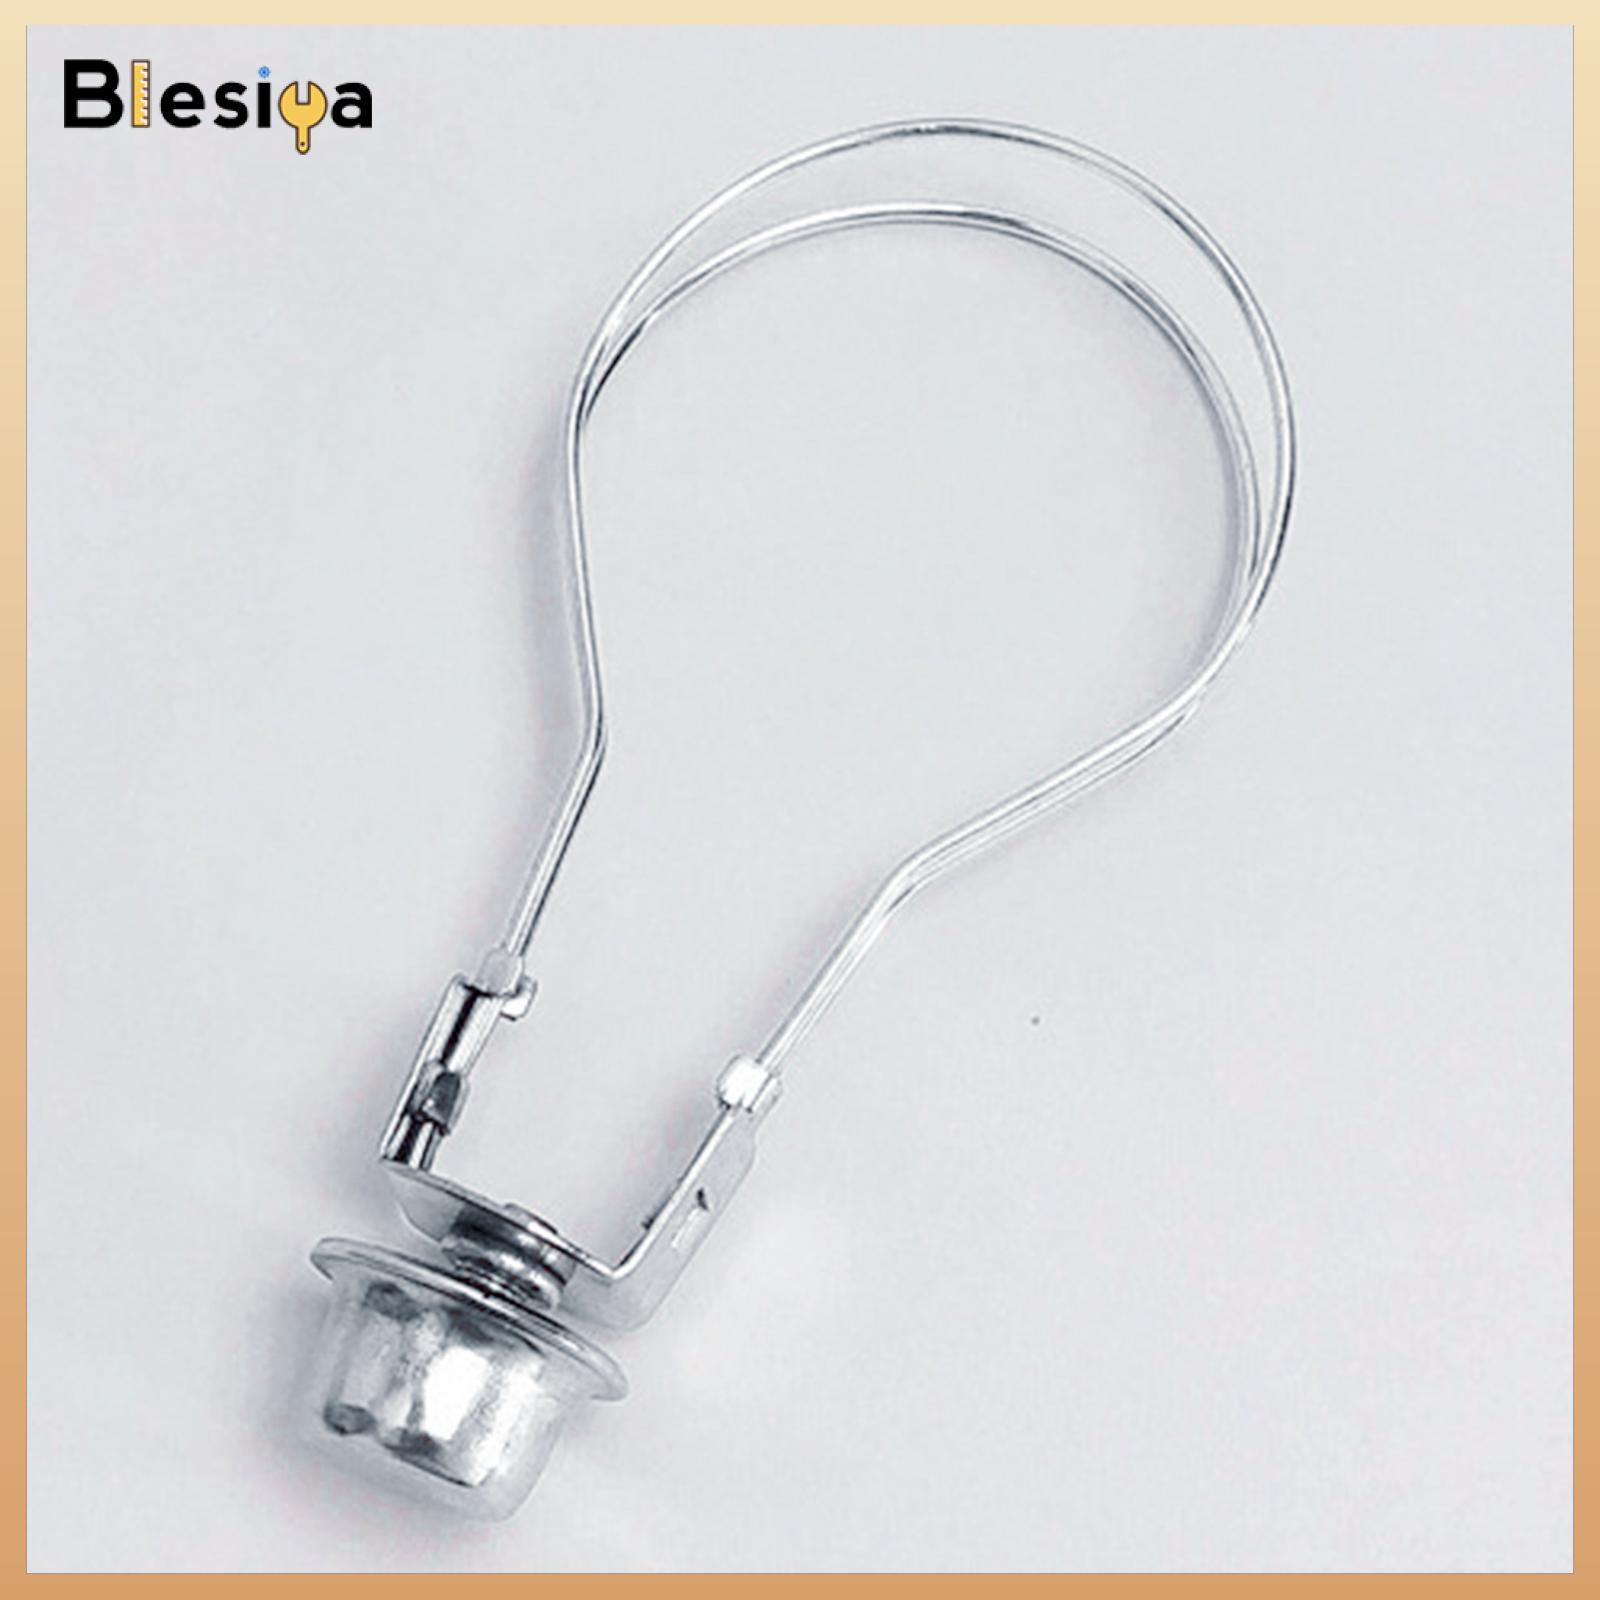 Blesiya Lamp Shade Holder Lighting Accessories Lighting Light Fitting for